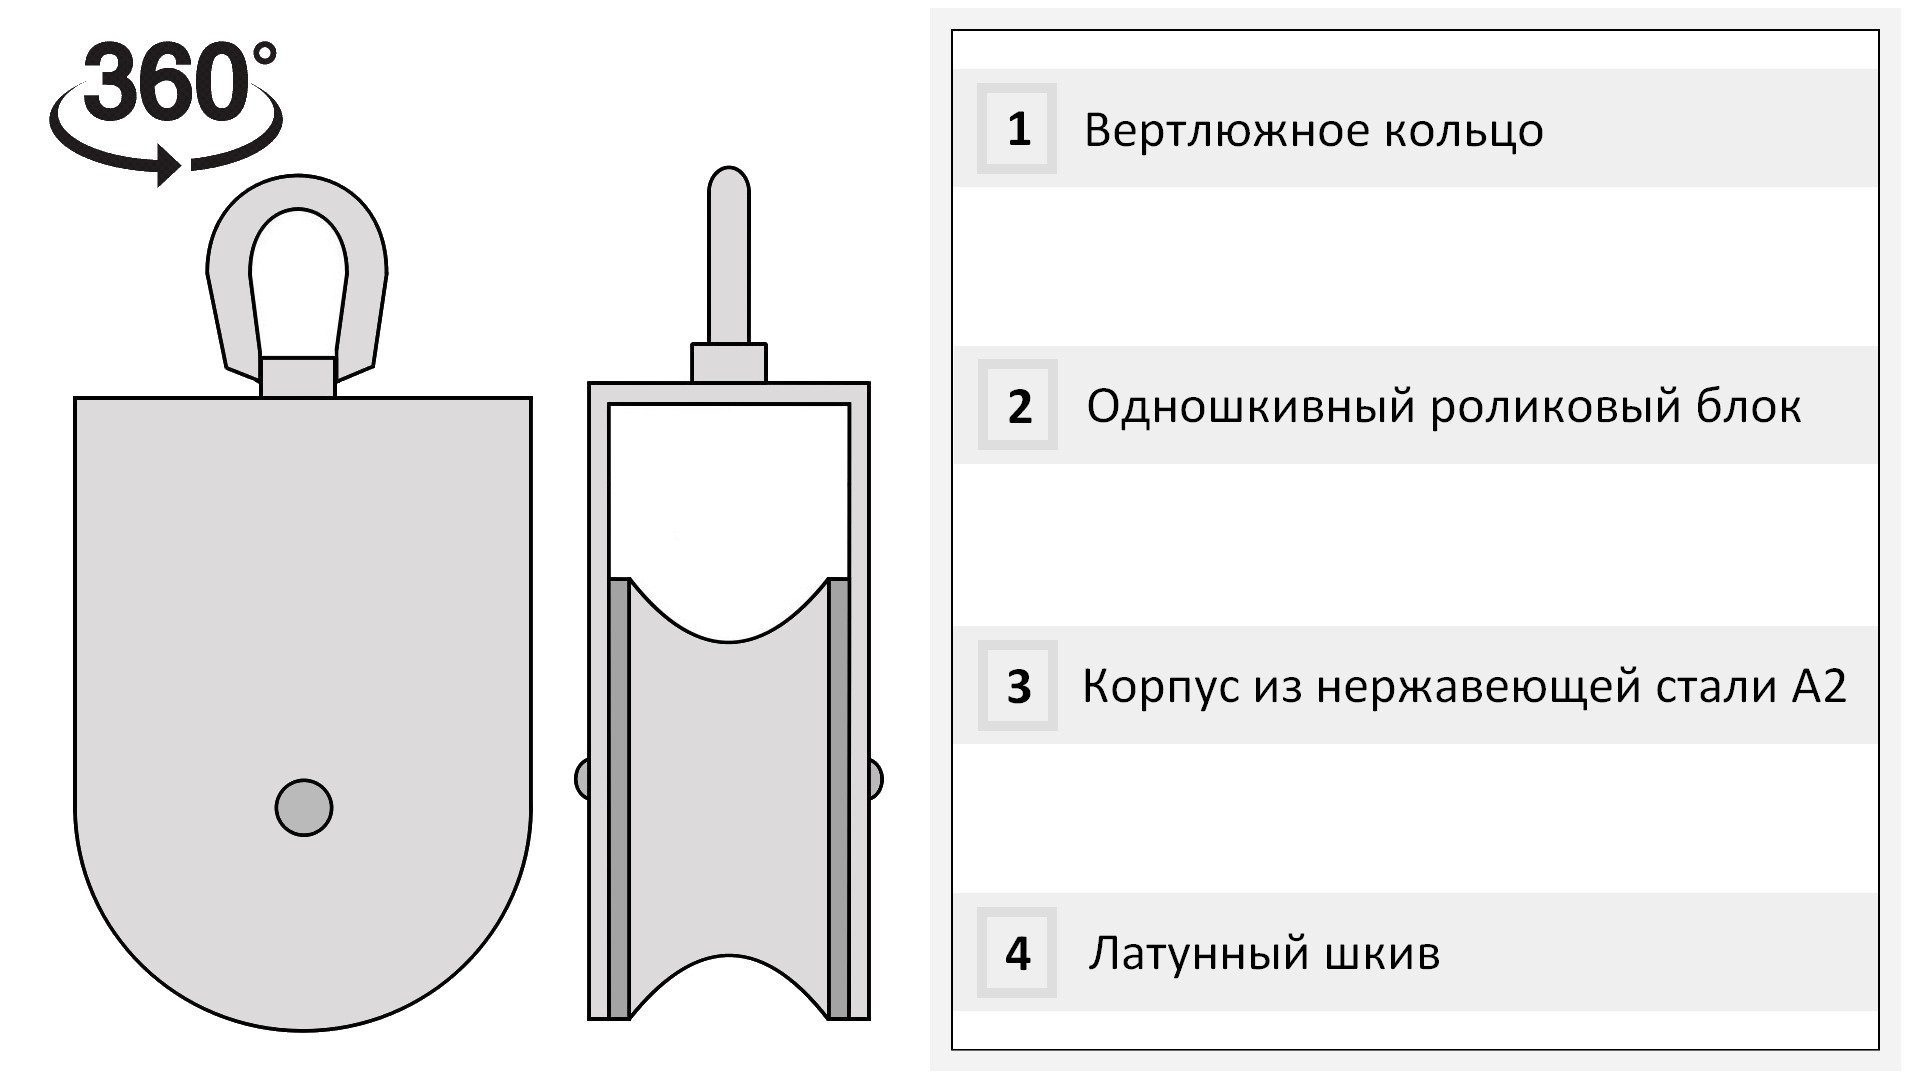 Такелажный блок для троса 14 мм с латунной втулкой 75 мм 8392-B, нержавеющая сталь А2 - фото